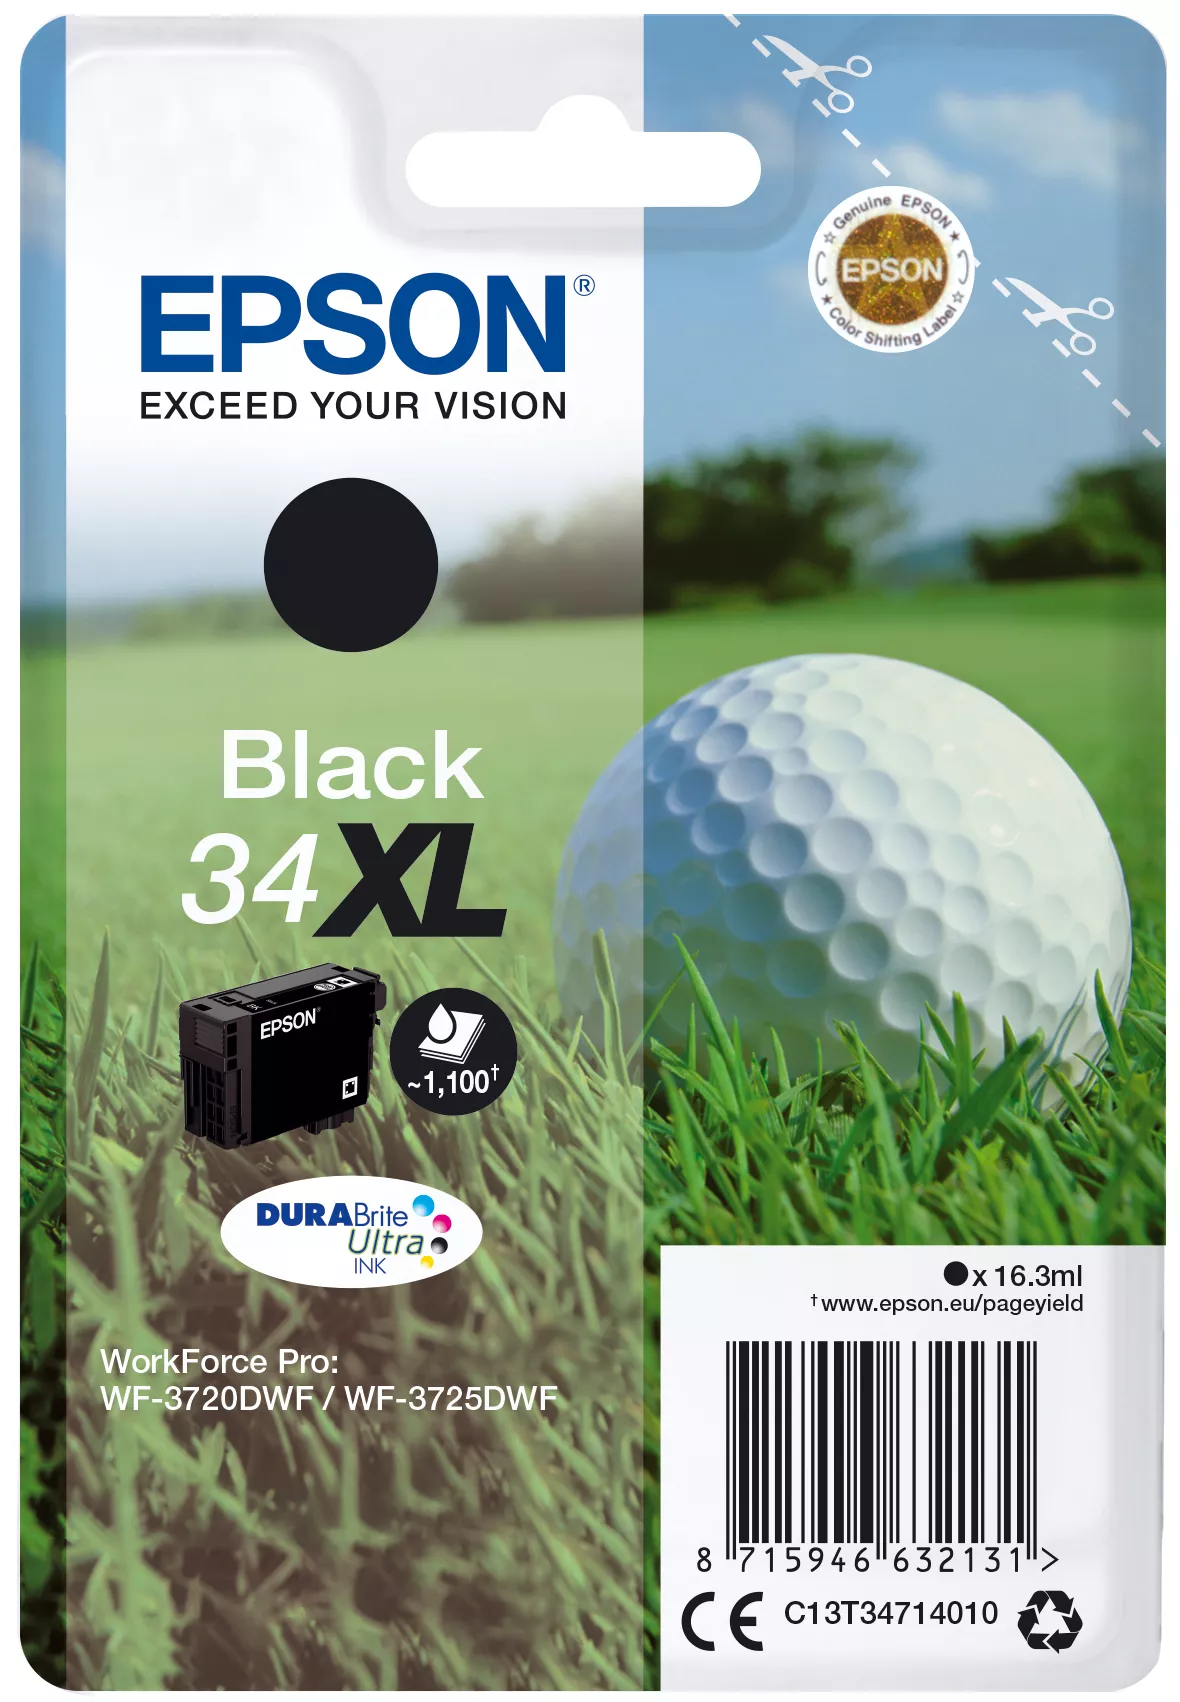 Achat EPSON Singlepack 34XL Encre Noir DURABrite Ultra 16,3ml sur hello RSE